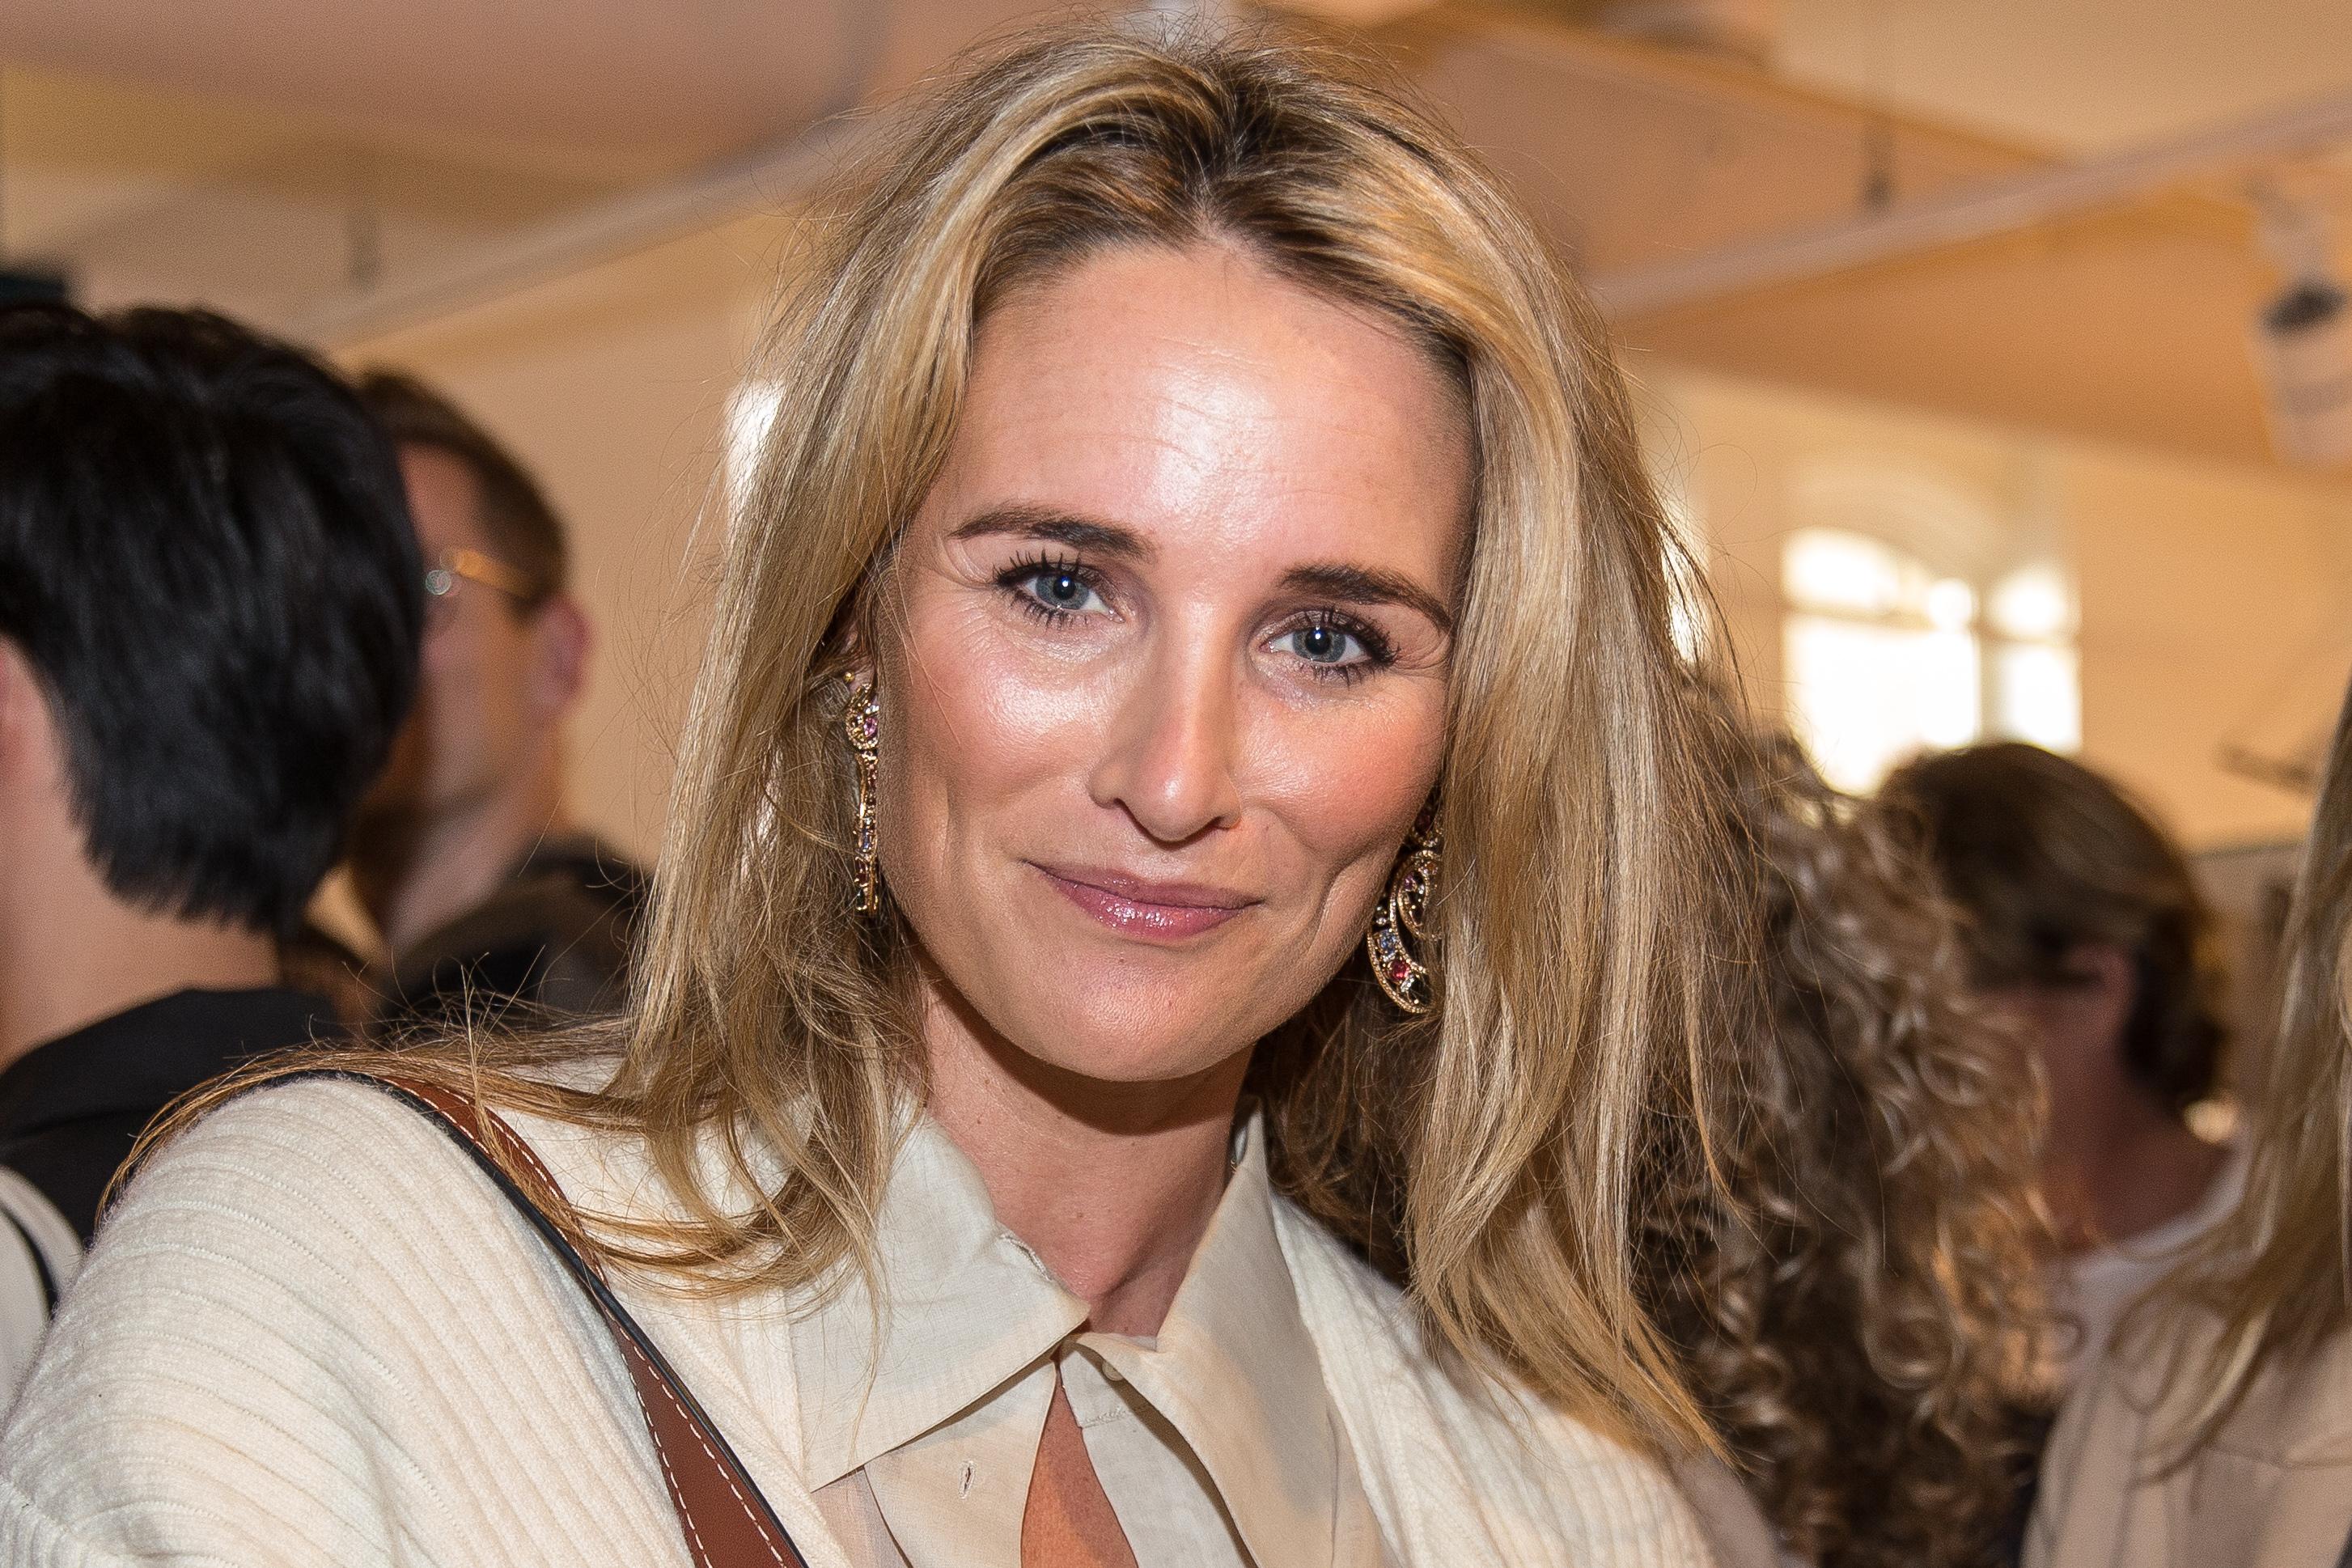 Lieke van Lexmond koppelt naakte singles in datingshow | Entertainment |  Telegraaf.nl